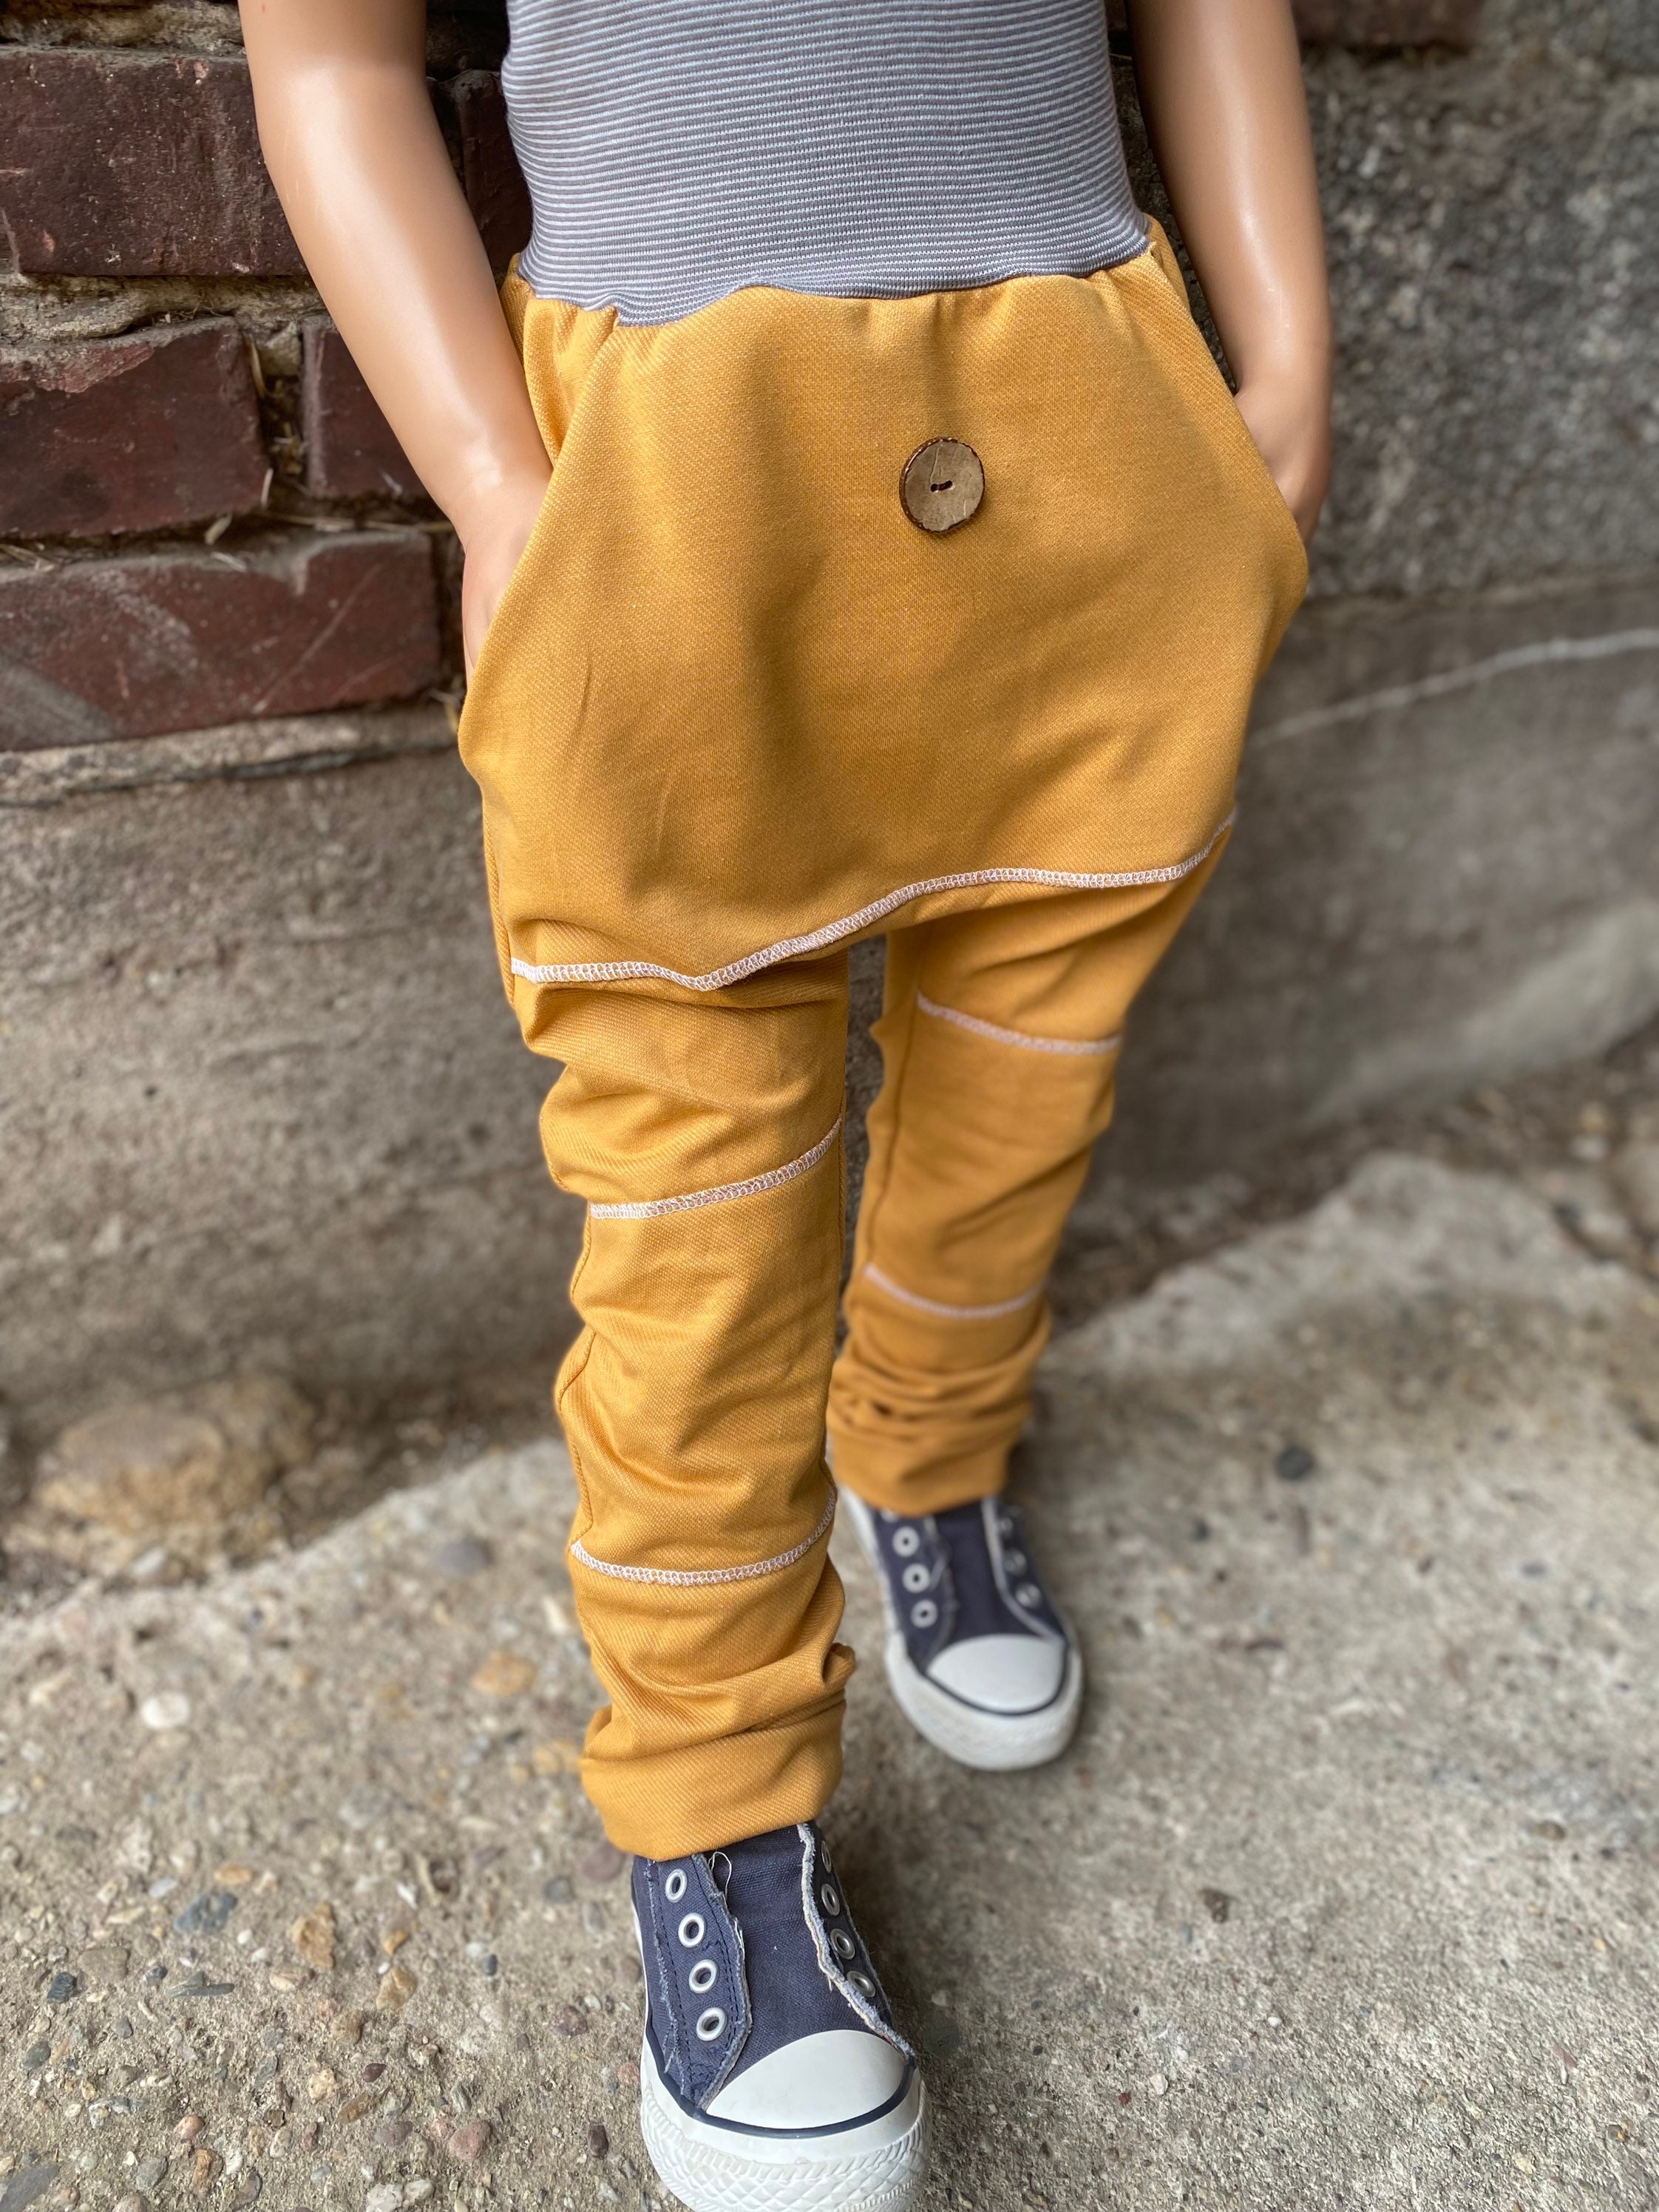 Regular Fit Pants Soft Jeans Girls Boys Baby Children\'s Clothing - Etsy  Denmark